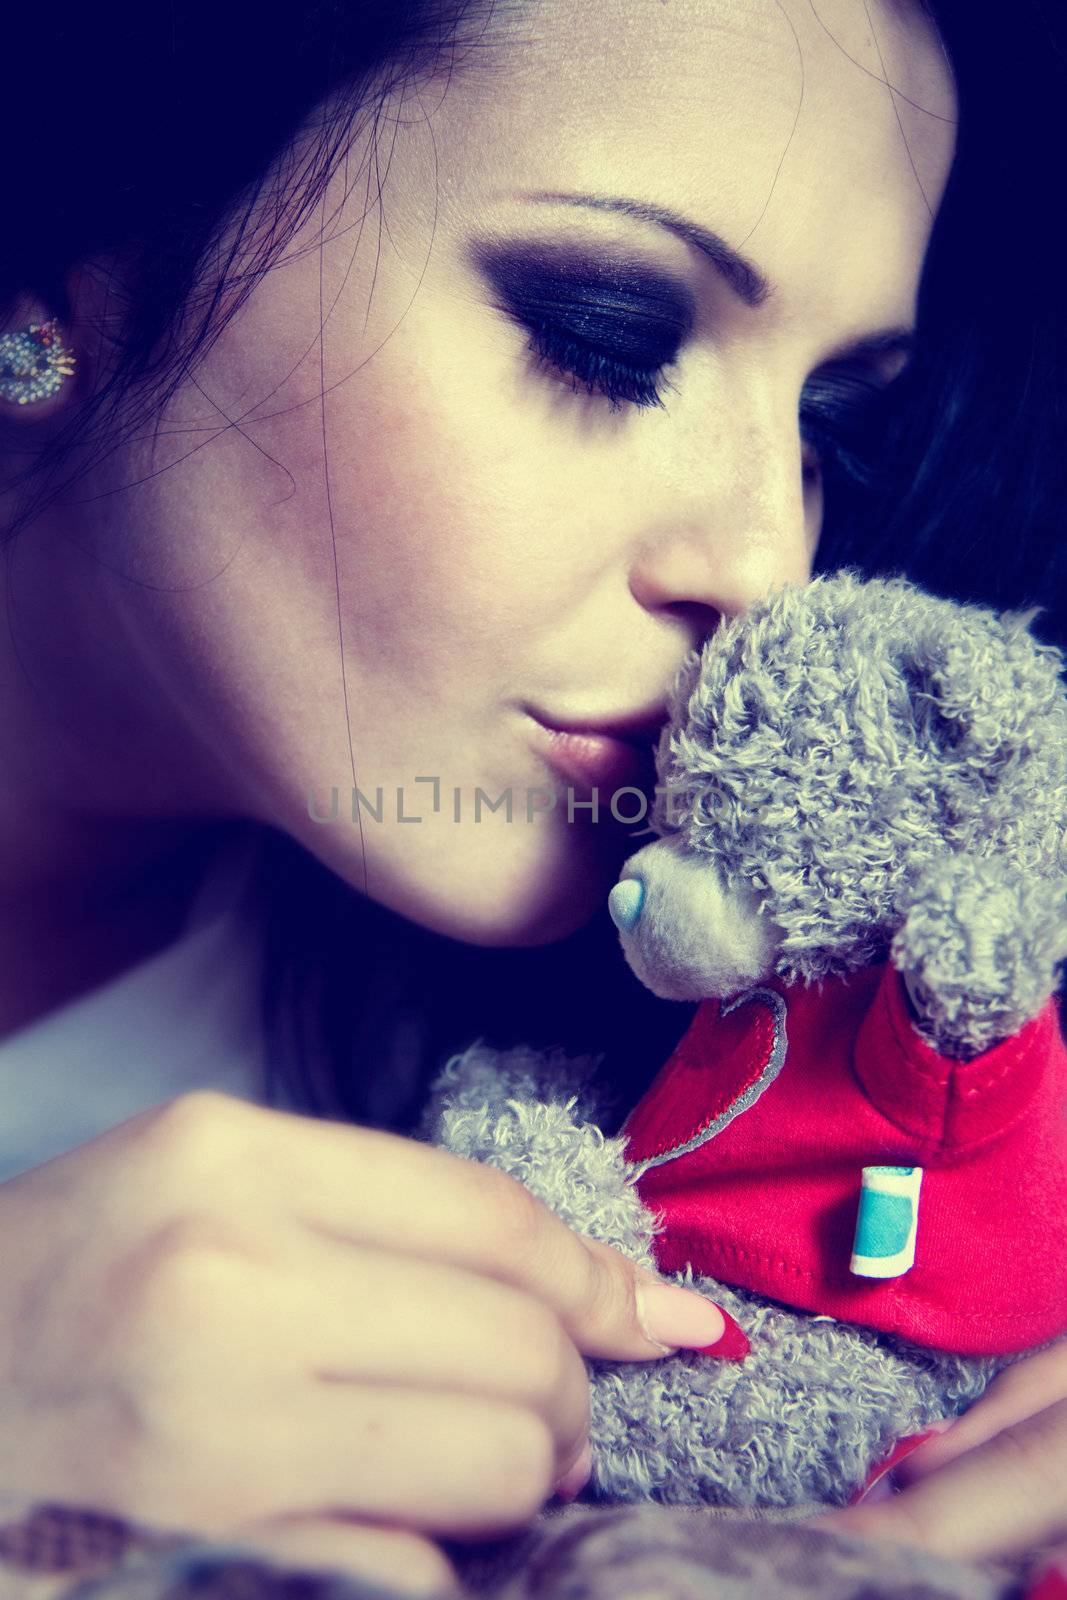 beautyfull brunette kissing the teddybear by oneinamillion